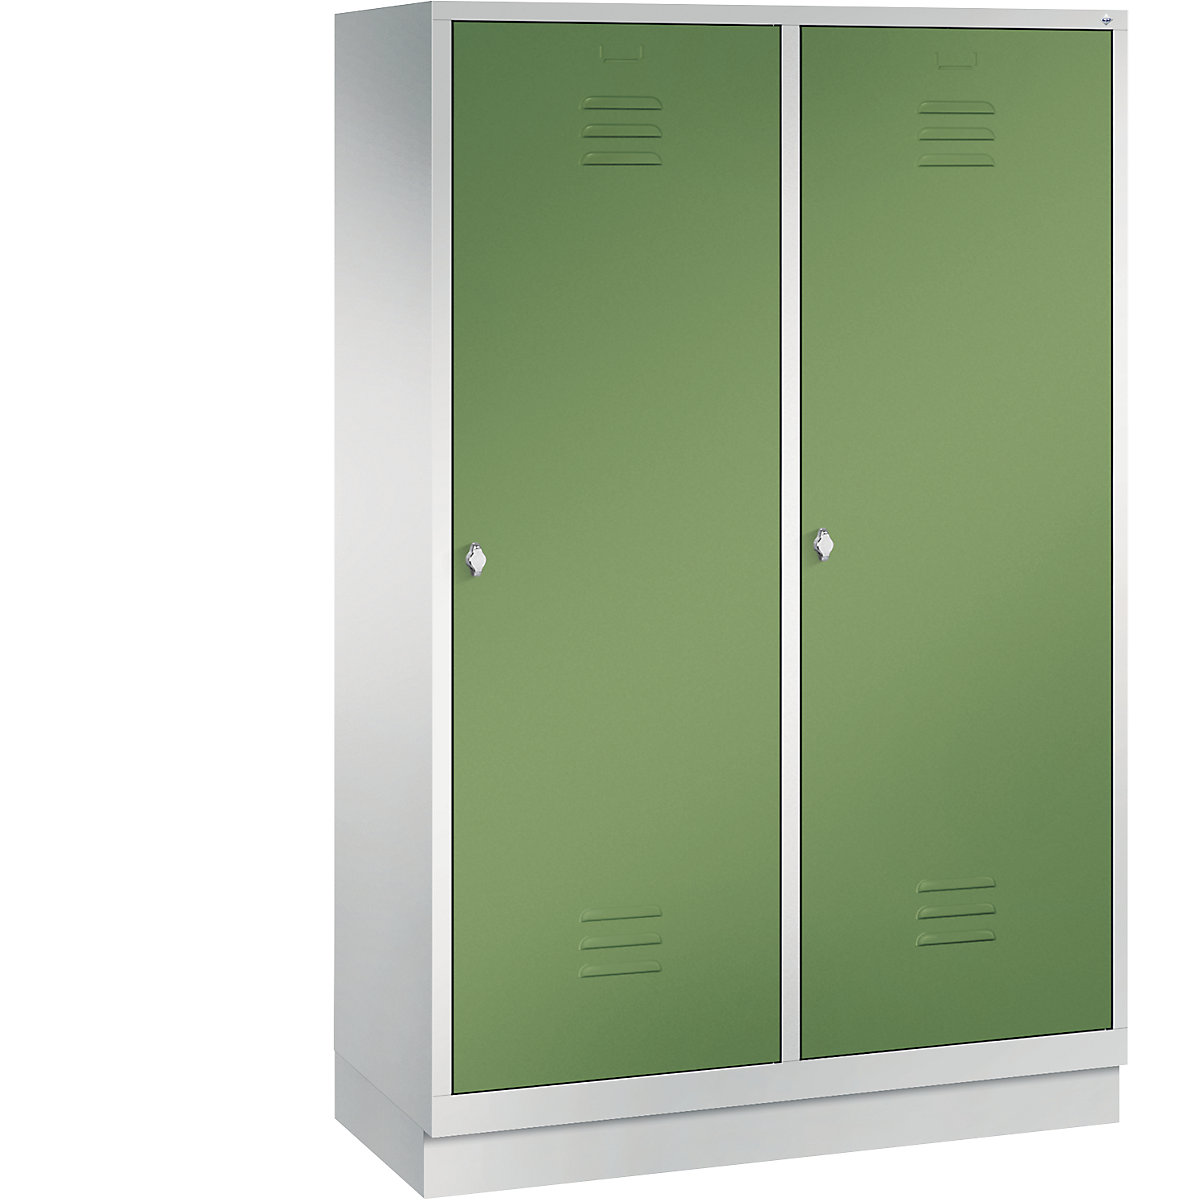 Šatní skříň se soklem CLASSIC s dveřmi přes 2 oddíly – C+P, 4 oddíly, šířka oddílu 300 mm, světlá šedá / rezedová zelená